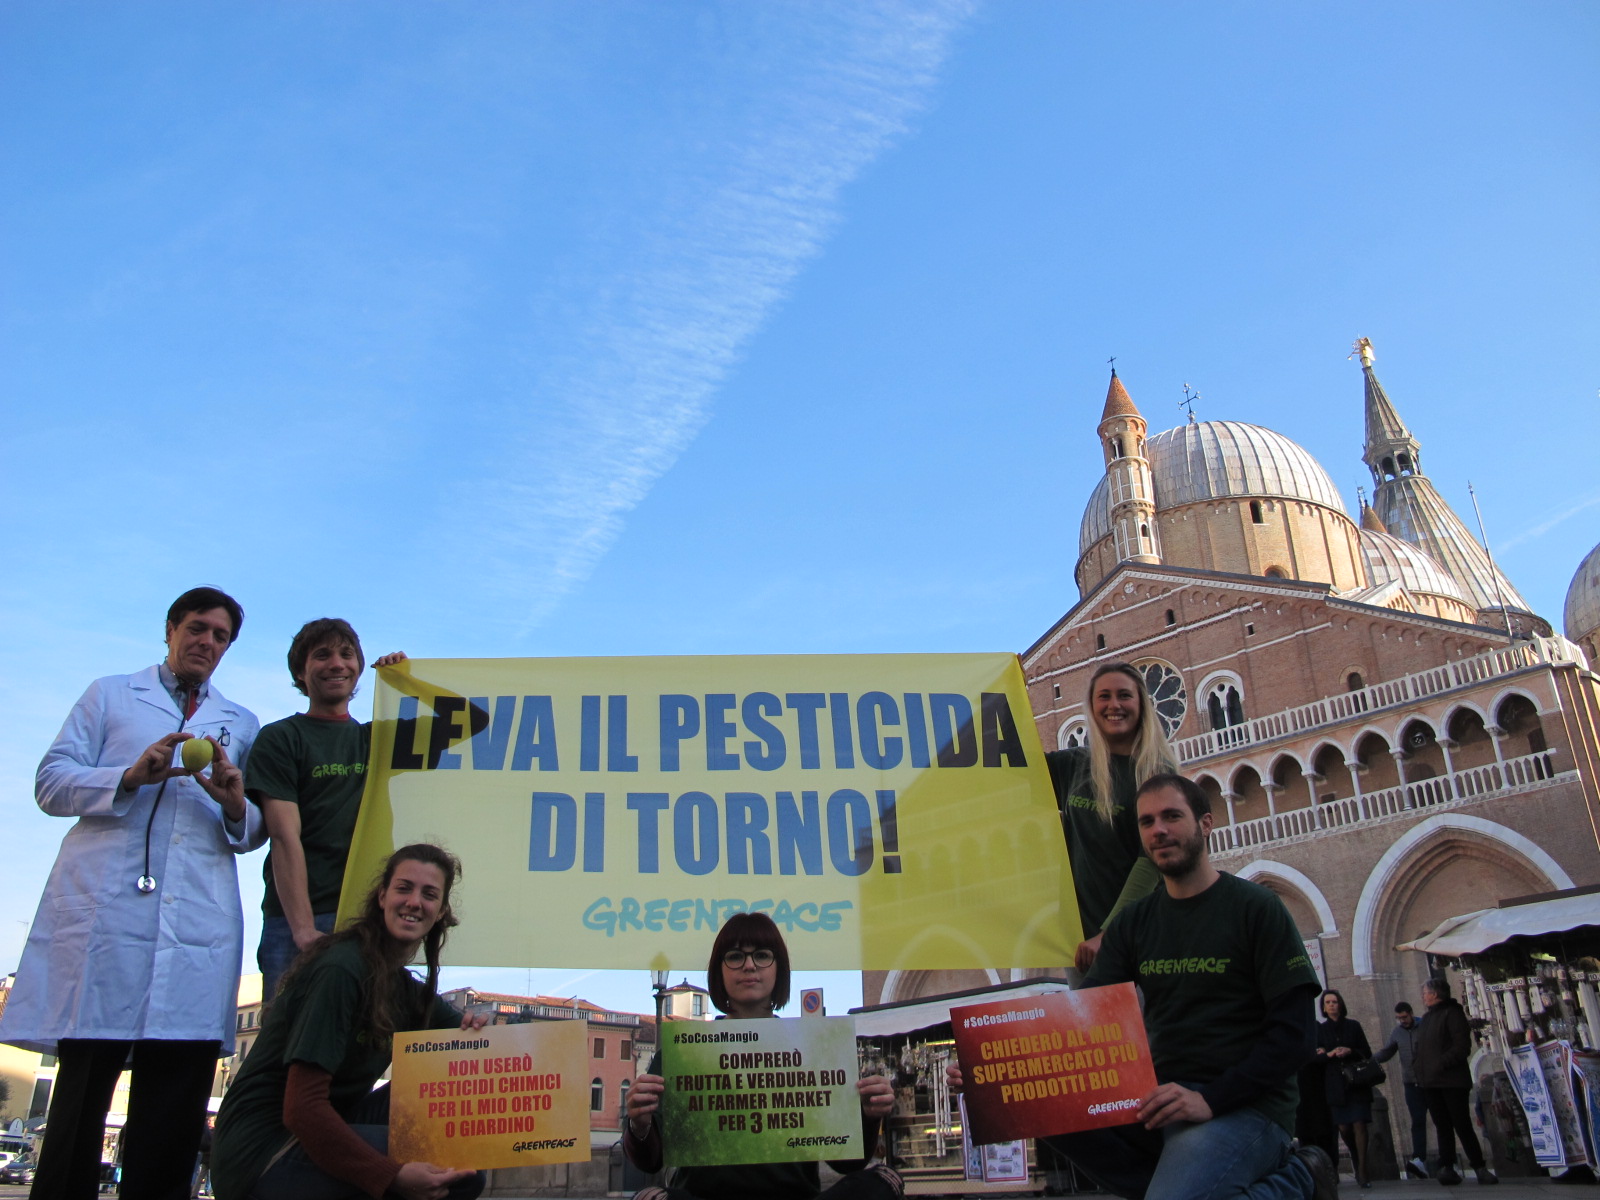  Volontari e attivisti di Greenpeace in piazza contro i pesticidi – FOTOGALLERY